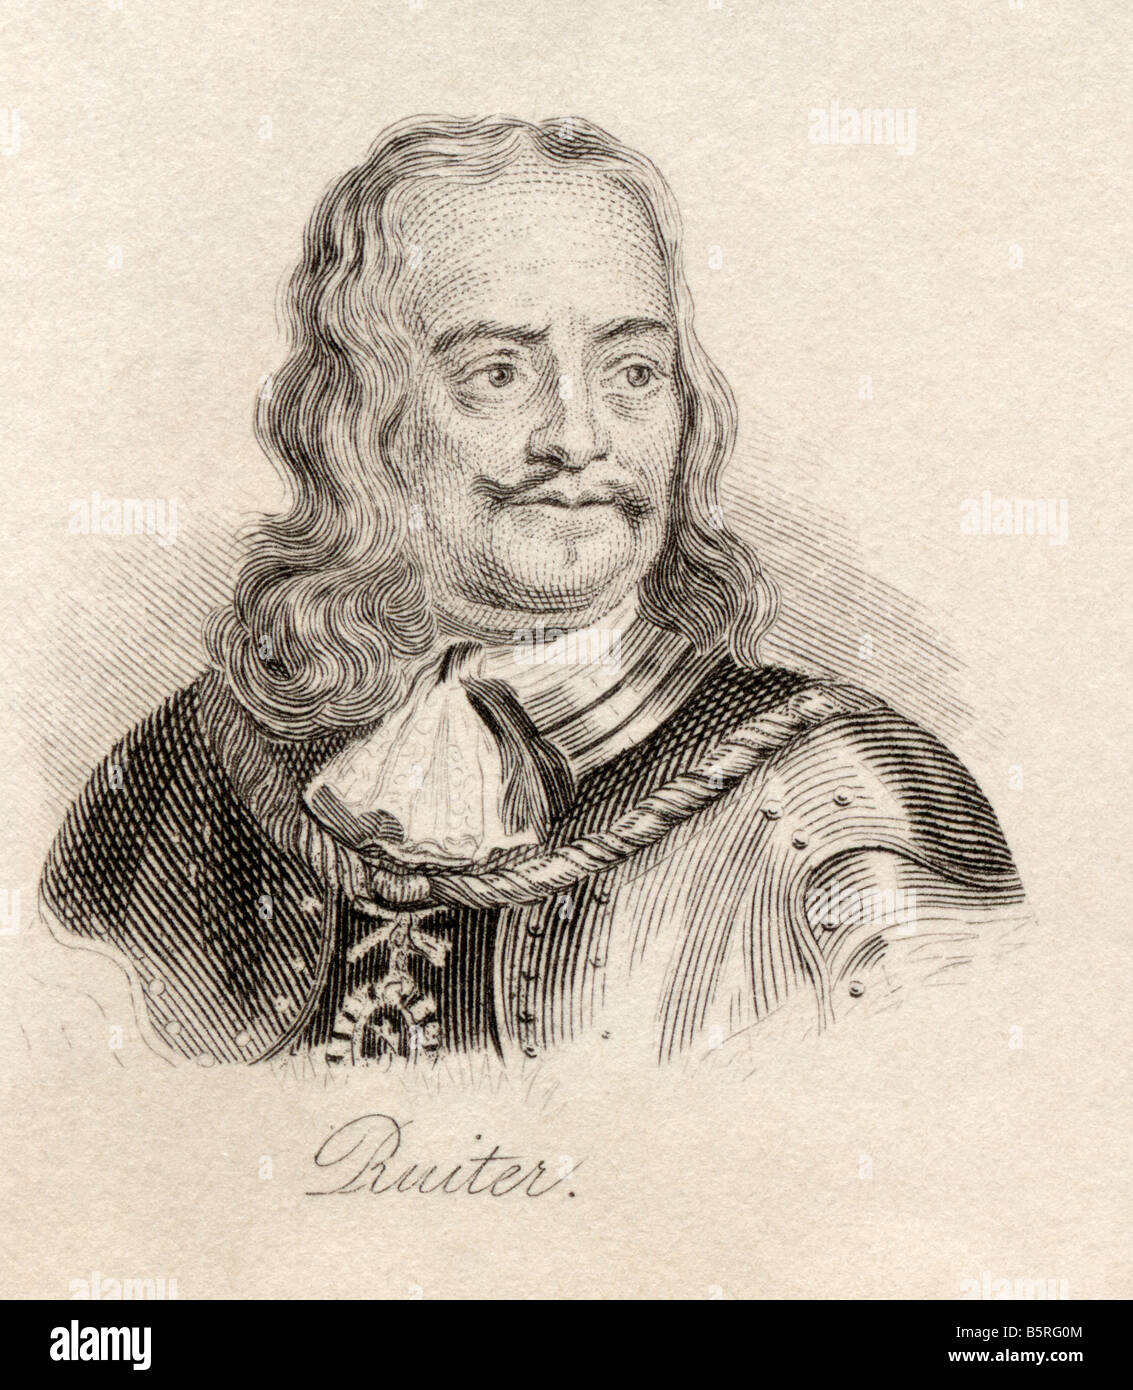 Michiel Adriaenszoon de Ruyter, 1607 - 1676. Amiral hollandais. Extrait du livre Crabb's Historical Dictionary, publié en 1825. Banque D'Images